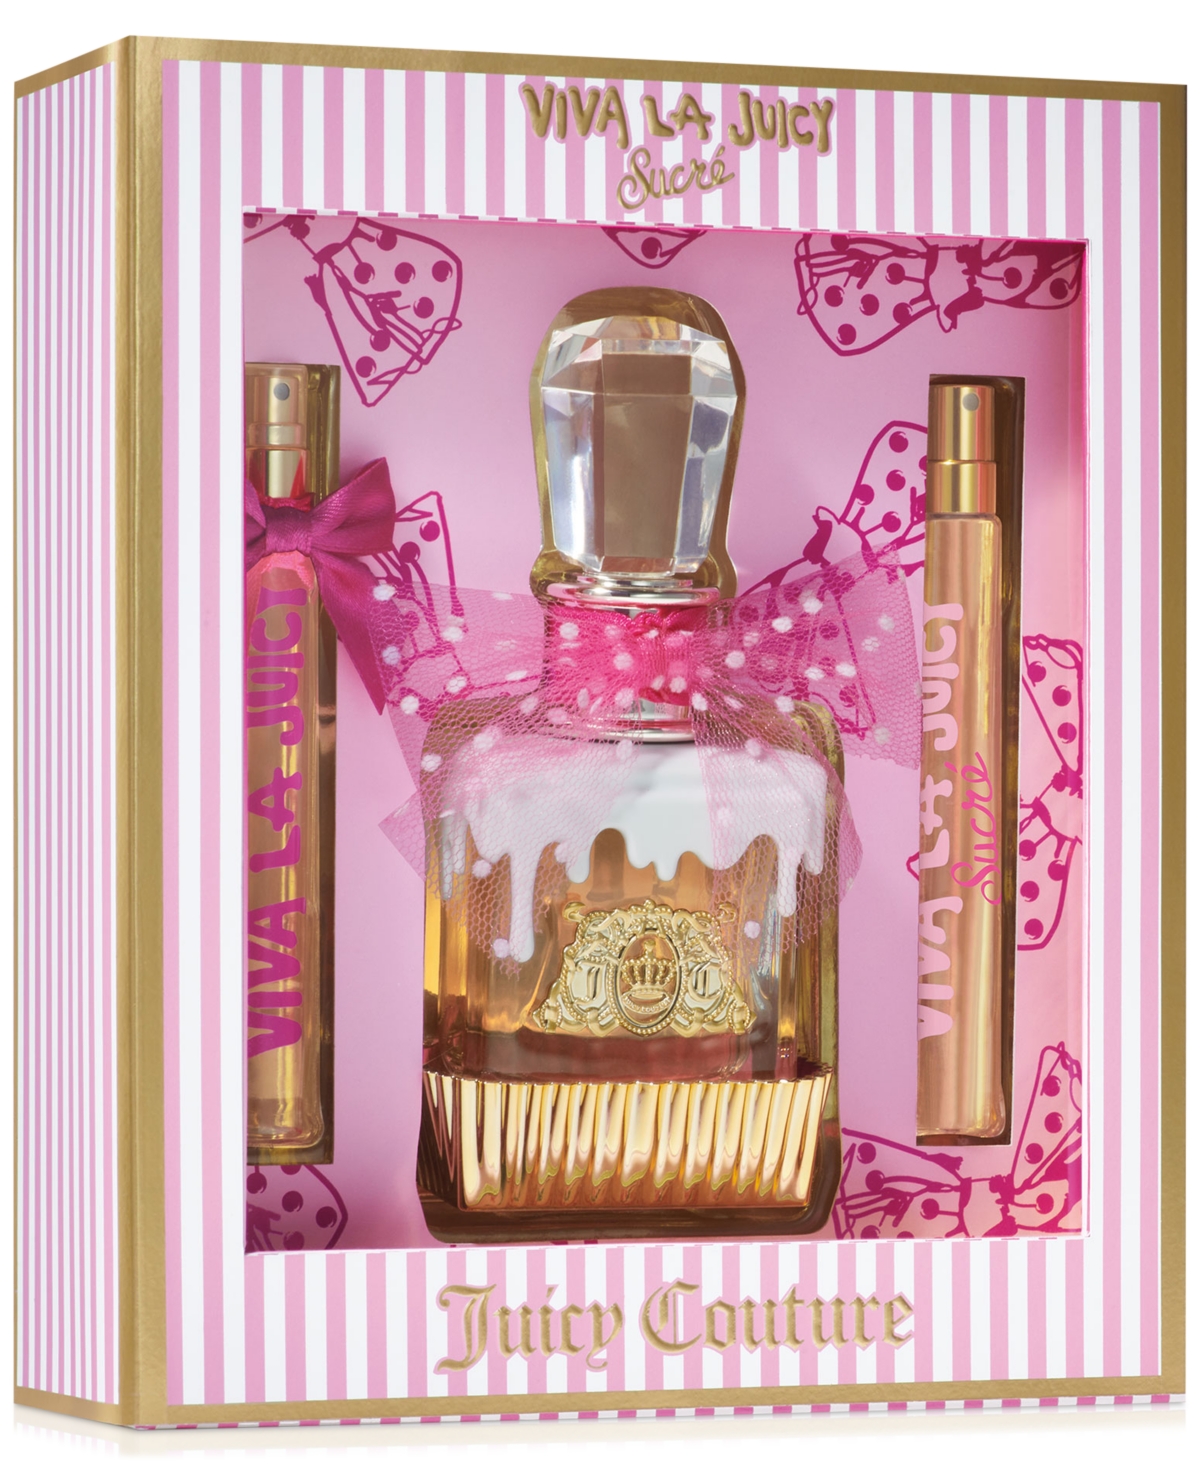 3-Pc. Viva La Juicy Sucre Eau de Parfum Gift Set